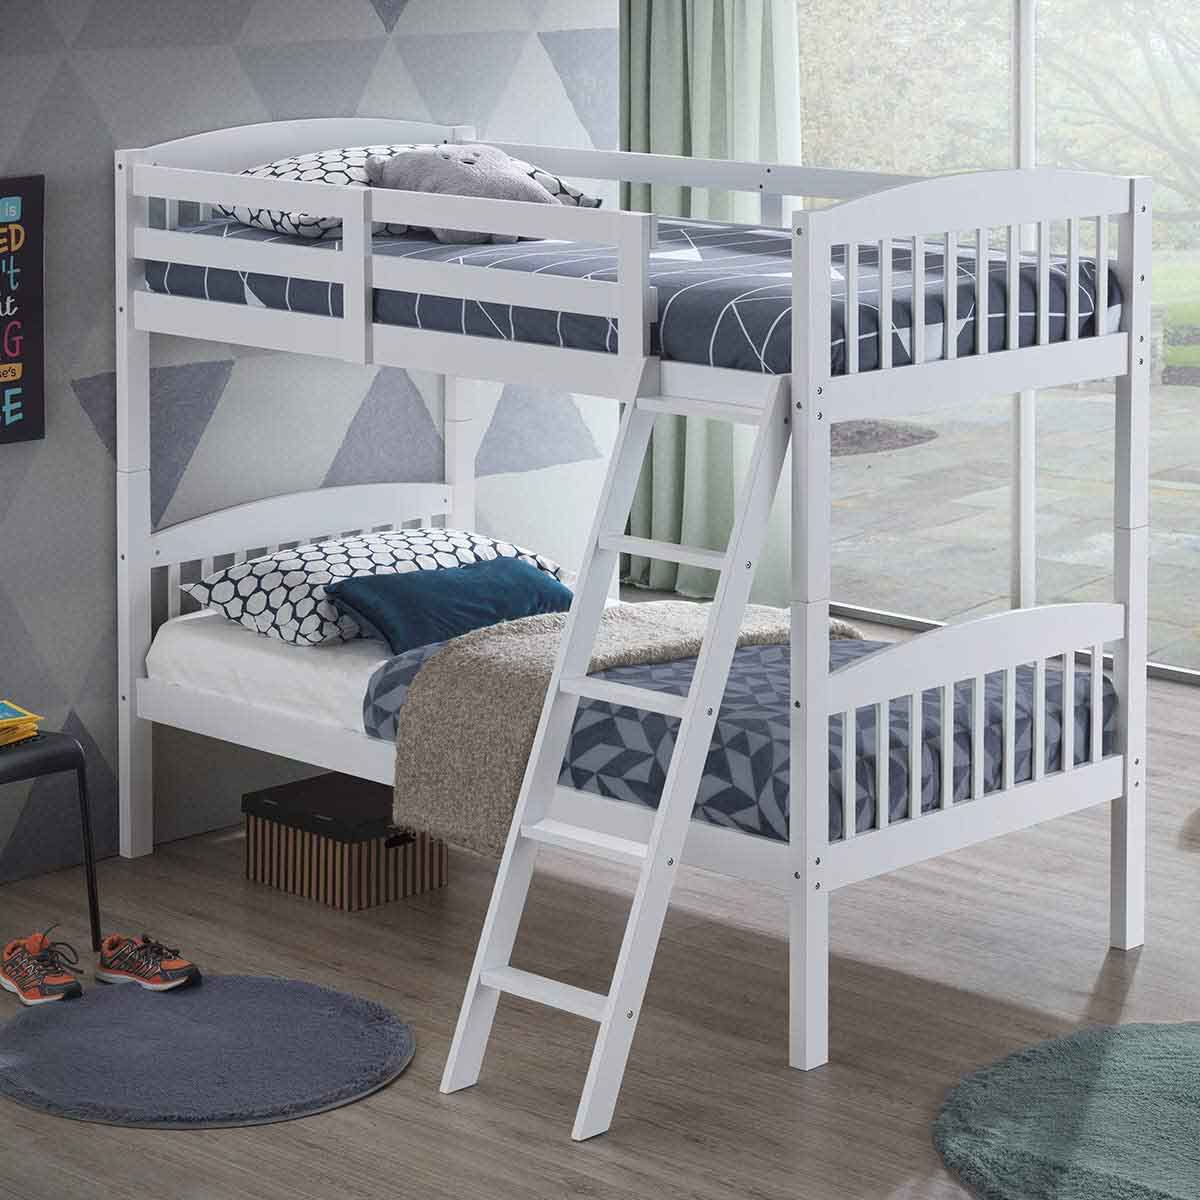 تخت خواب دو طبقه سفید چوبی با حفاظ تخت